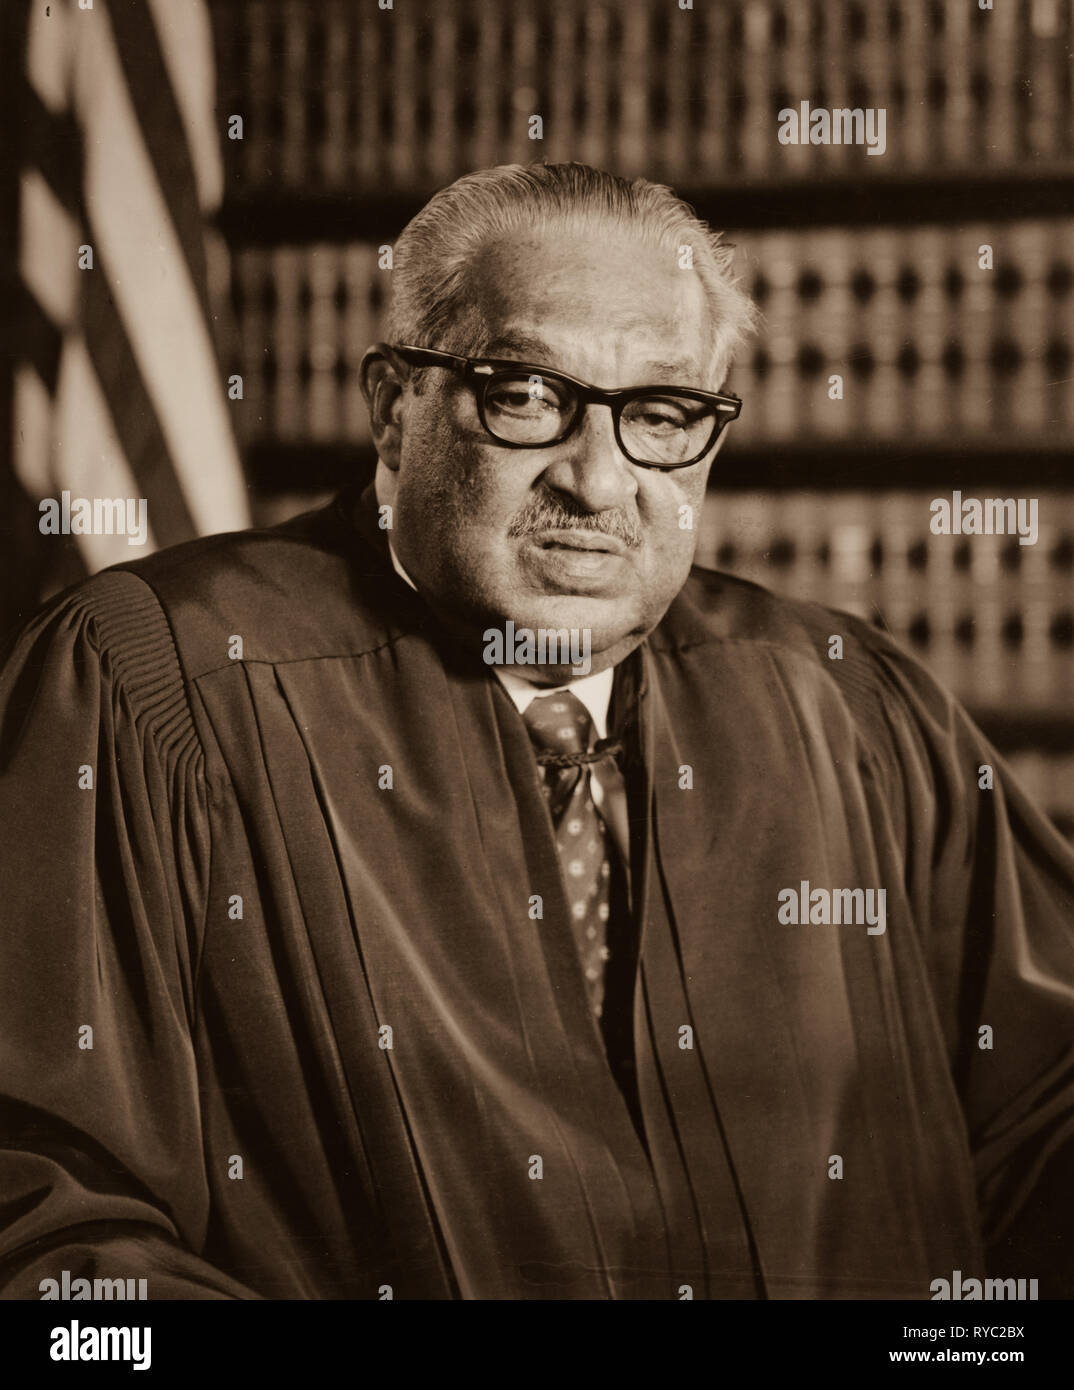 Thurgood Marshall, associare la giustizia della Corte suprema degli Stati Uniti nel suo toghe dei magistrati presso la sua Corte Suprema degli uffici. Gennaio 28, 1976 Foto Stock